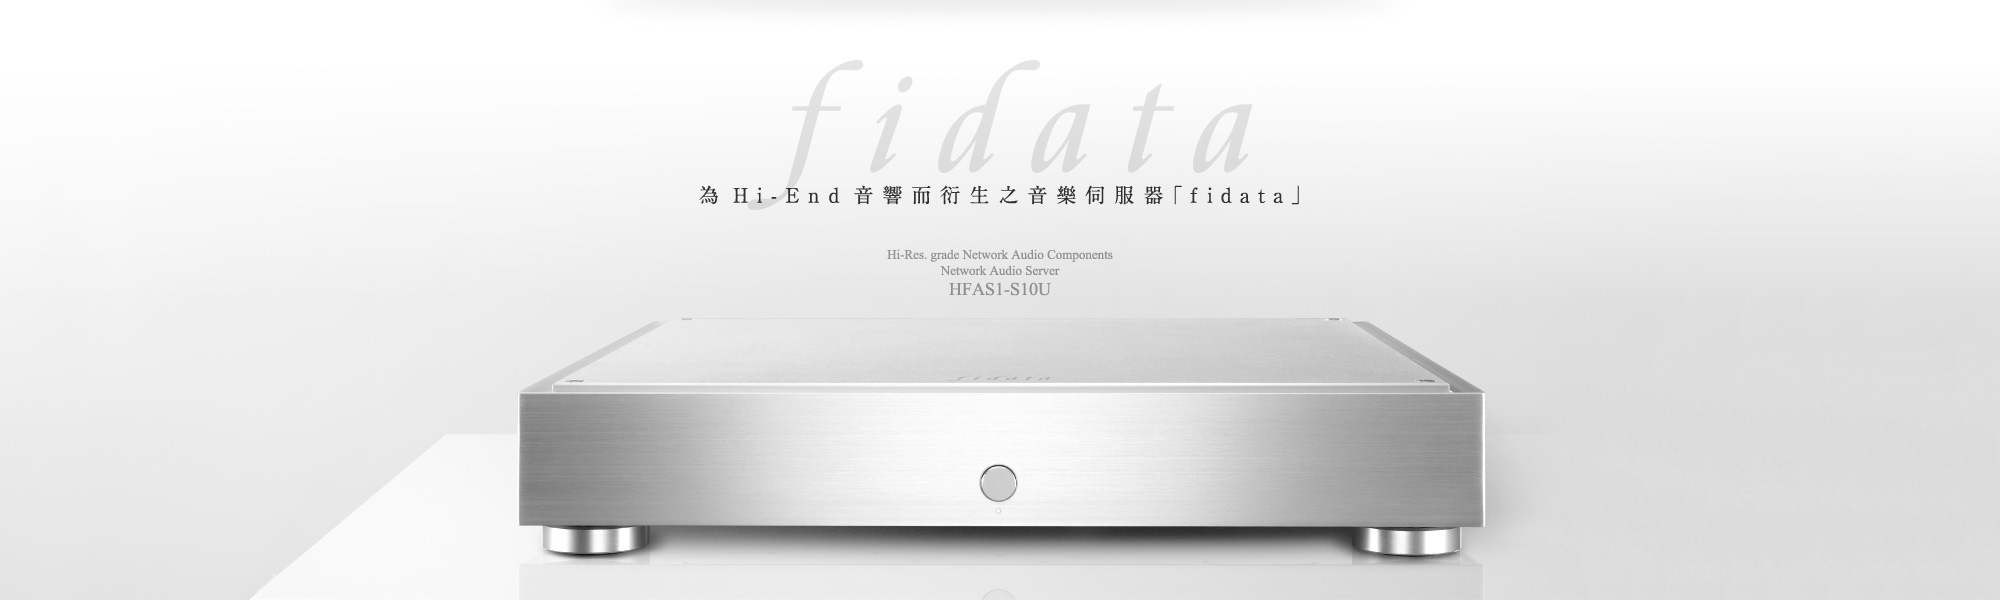 為Hi-End音響而衍生之音樂伺服器「fidata」